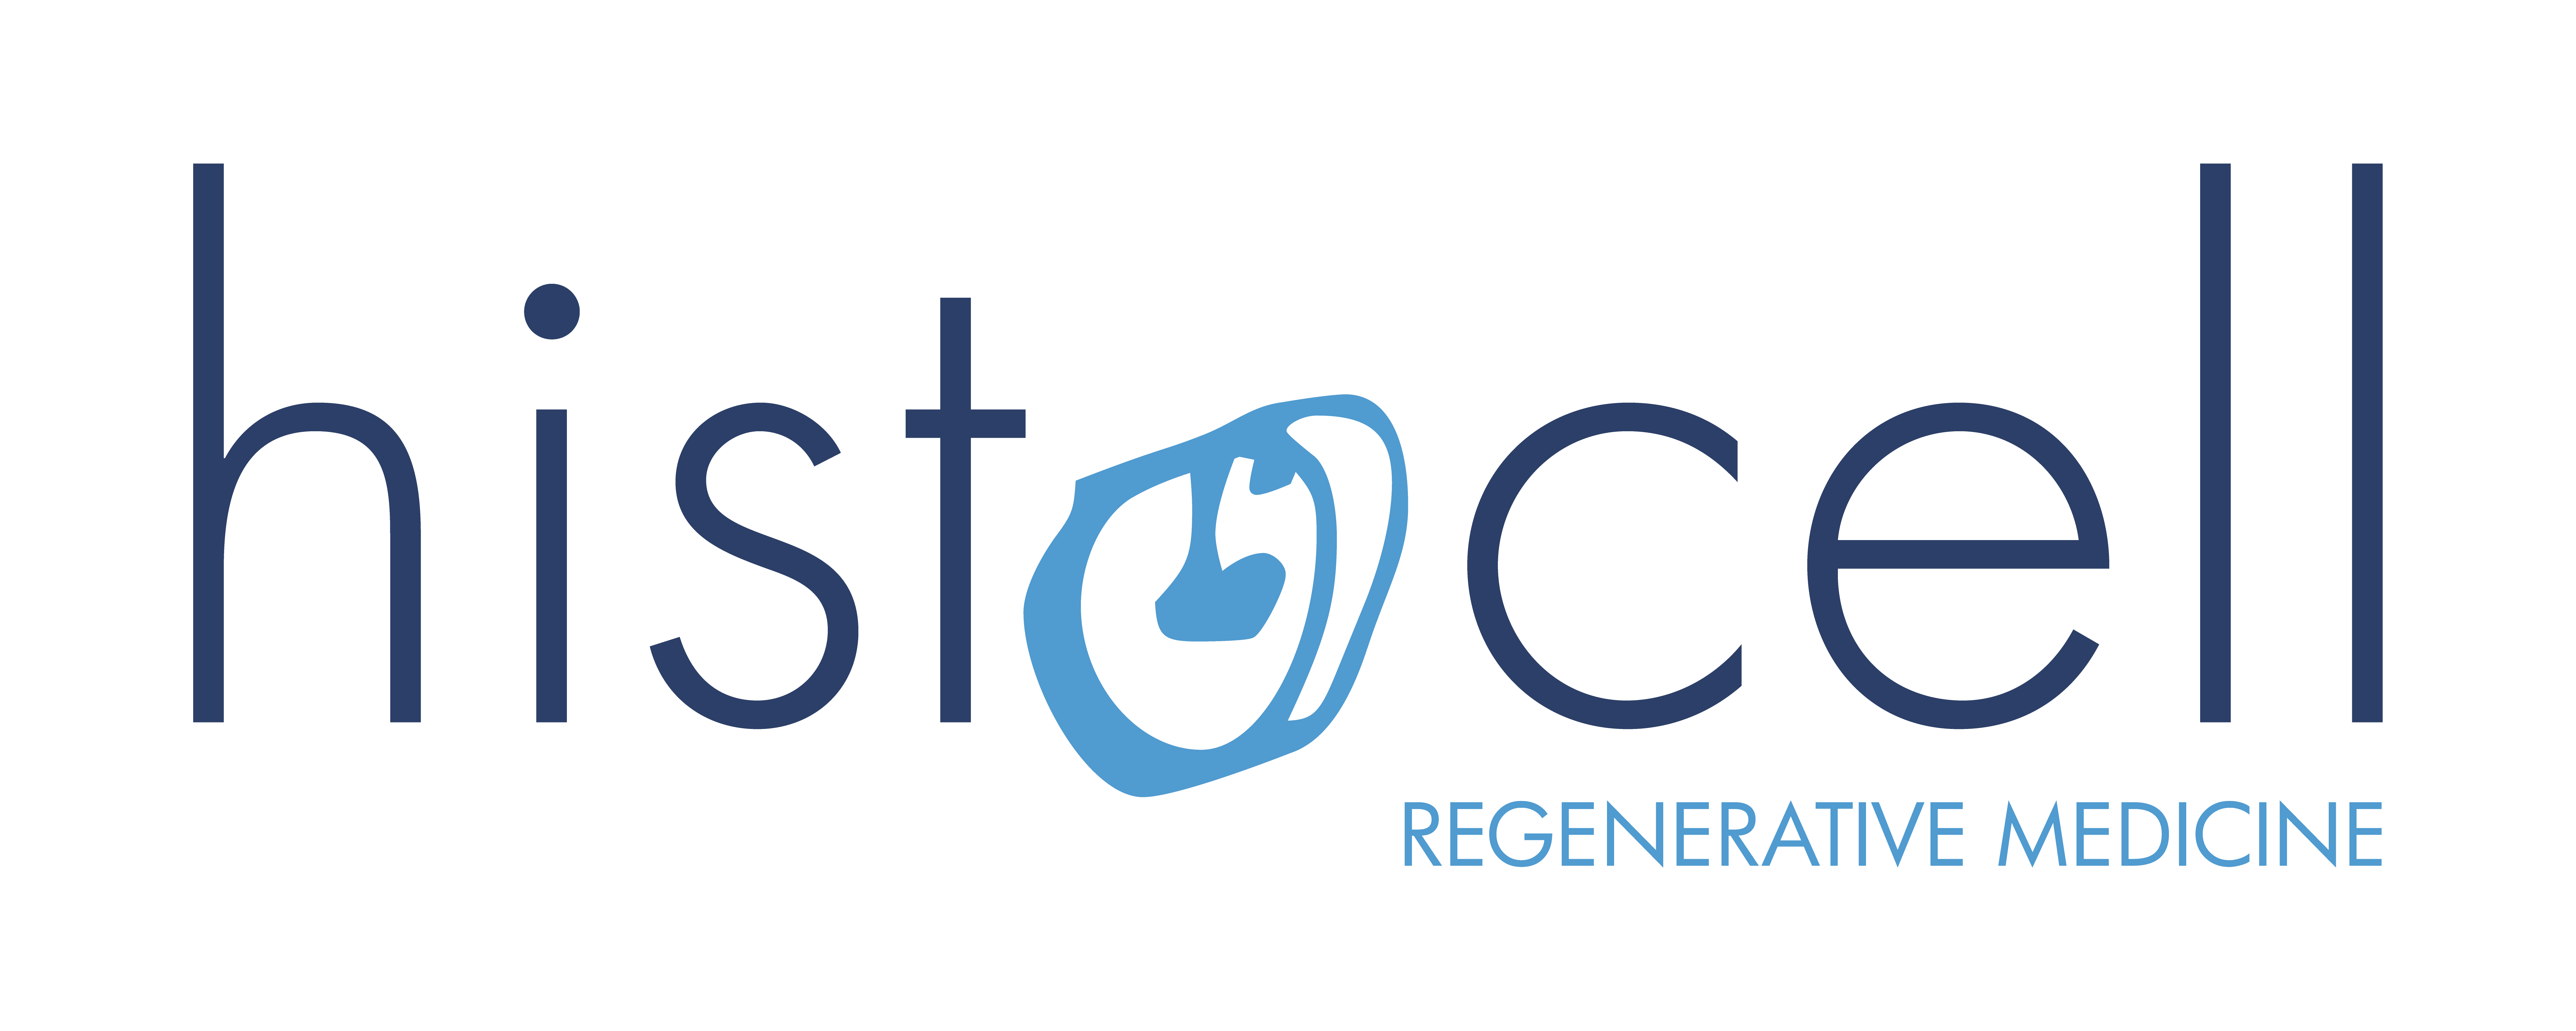 Histocell SL logo